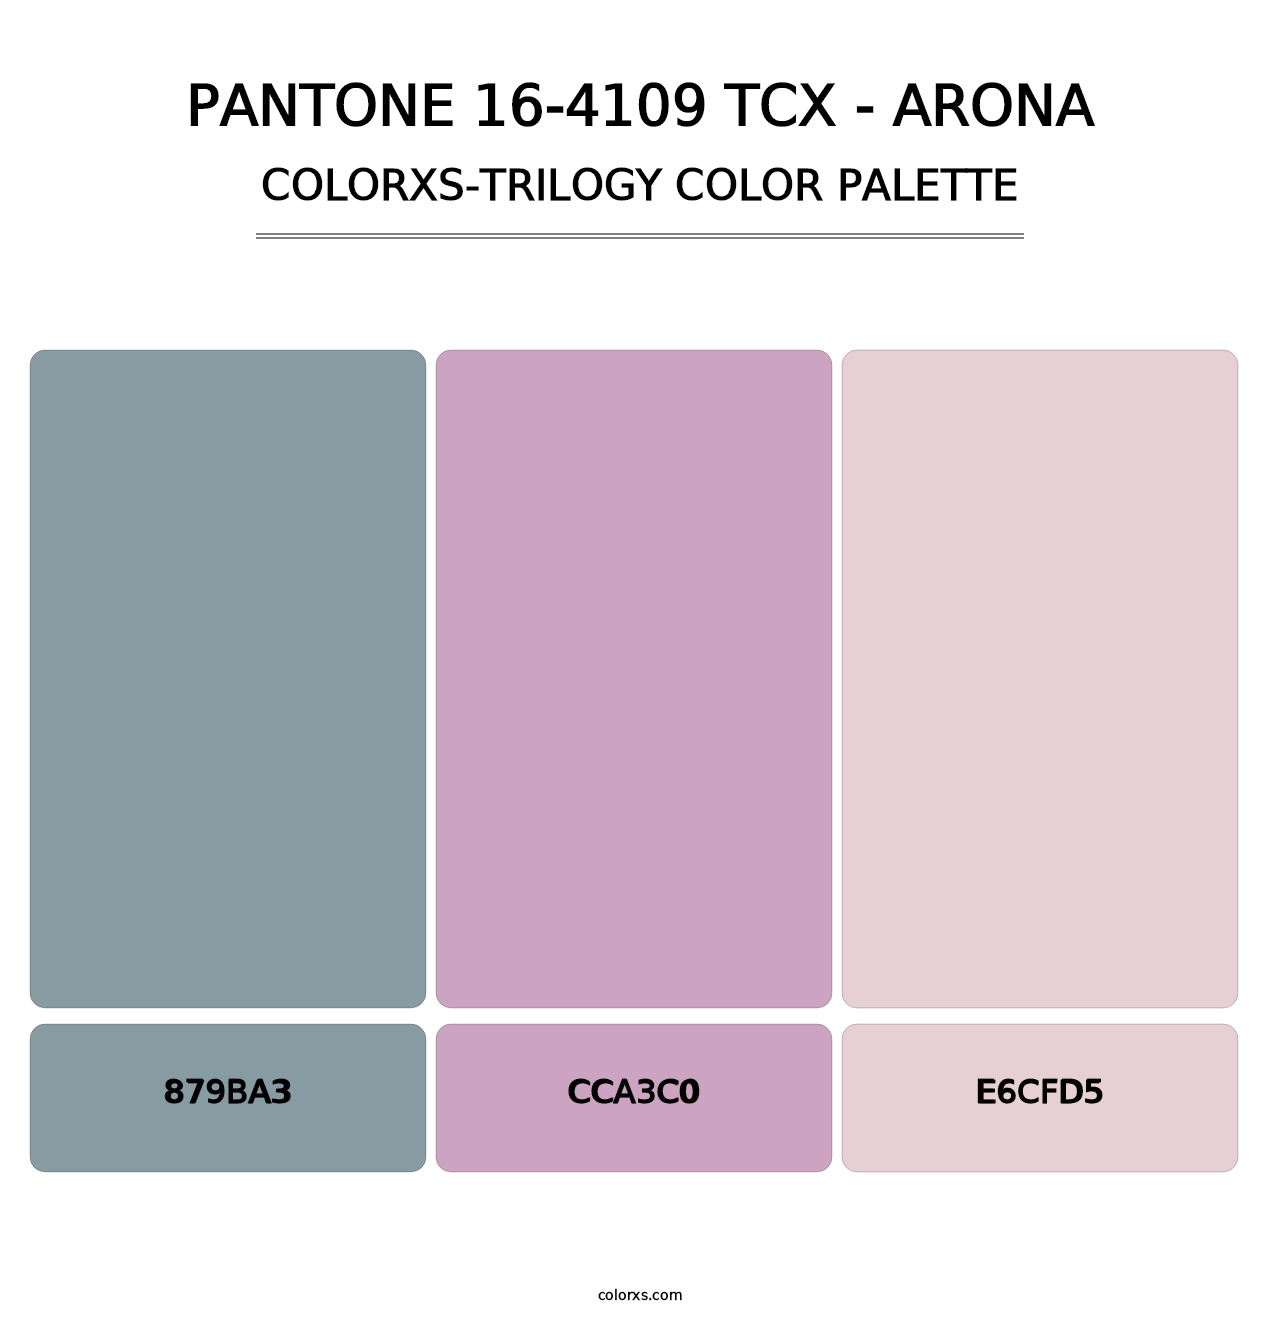 PANTONE 16-4109 TCX - Arona - Colorxs Trilogy Palette